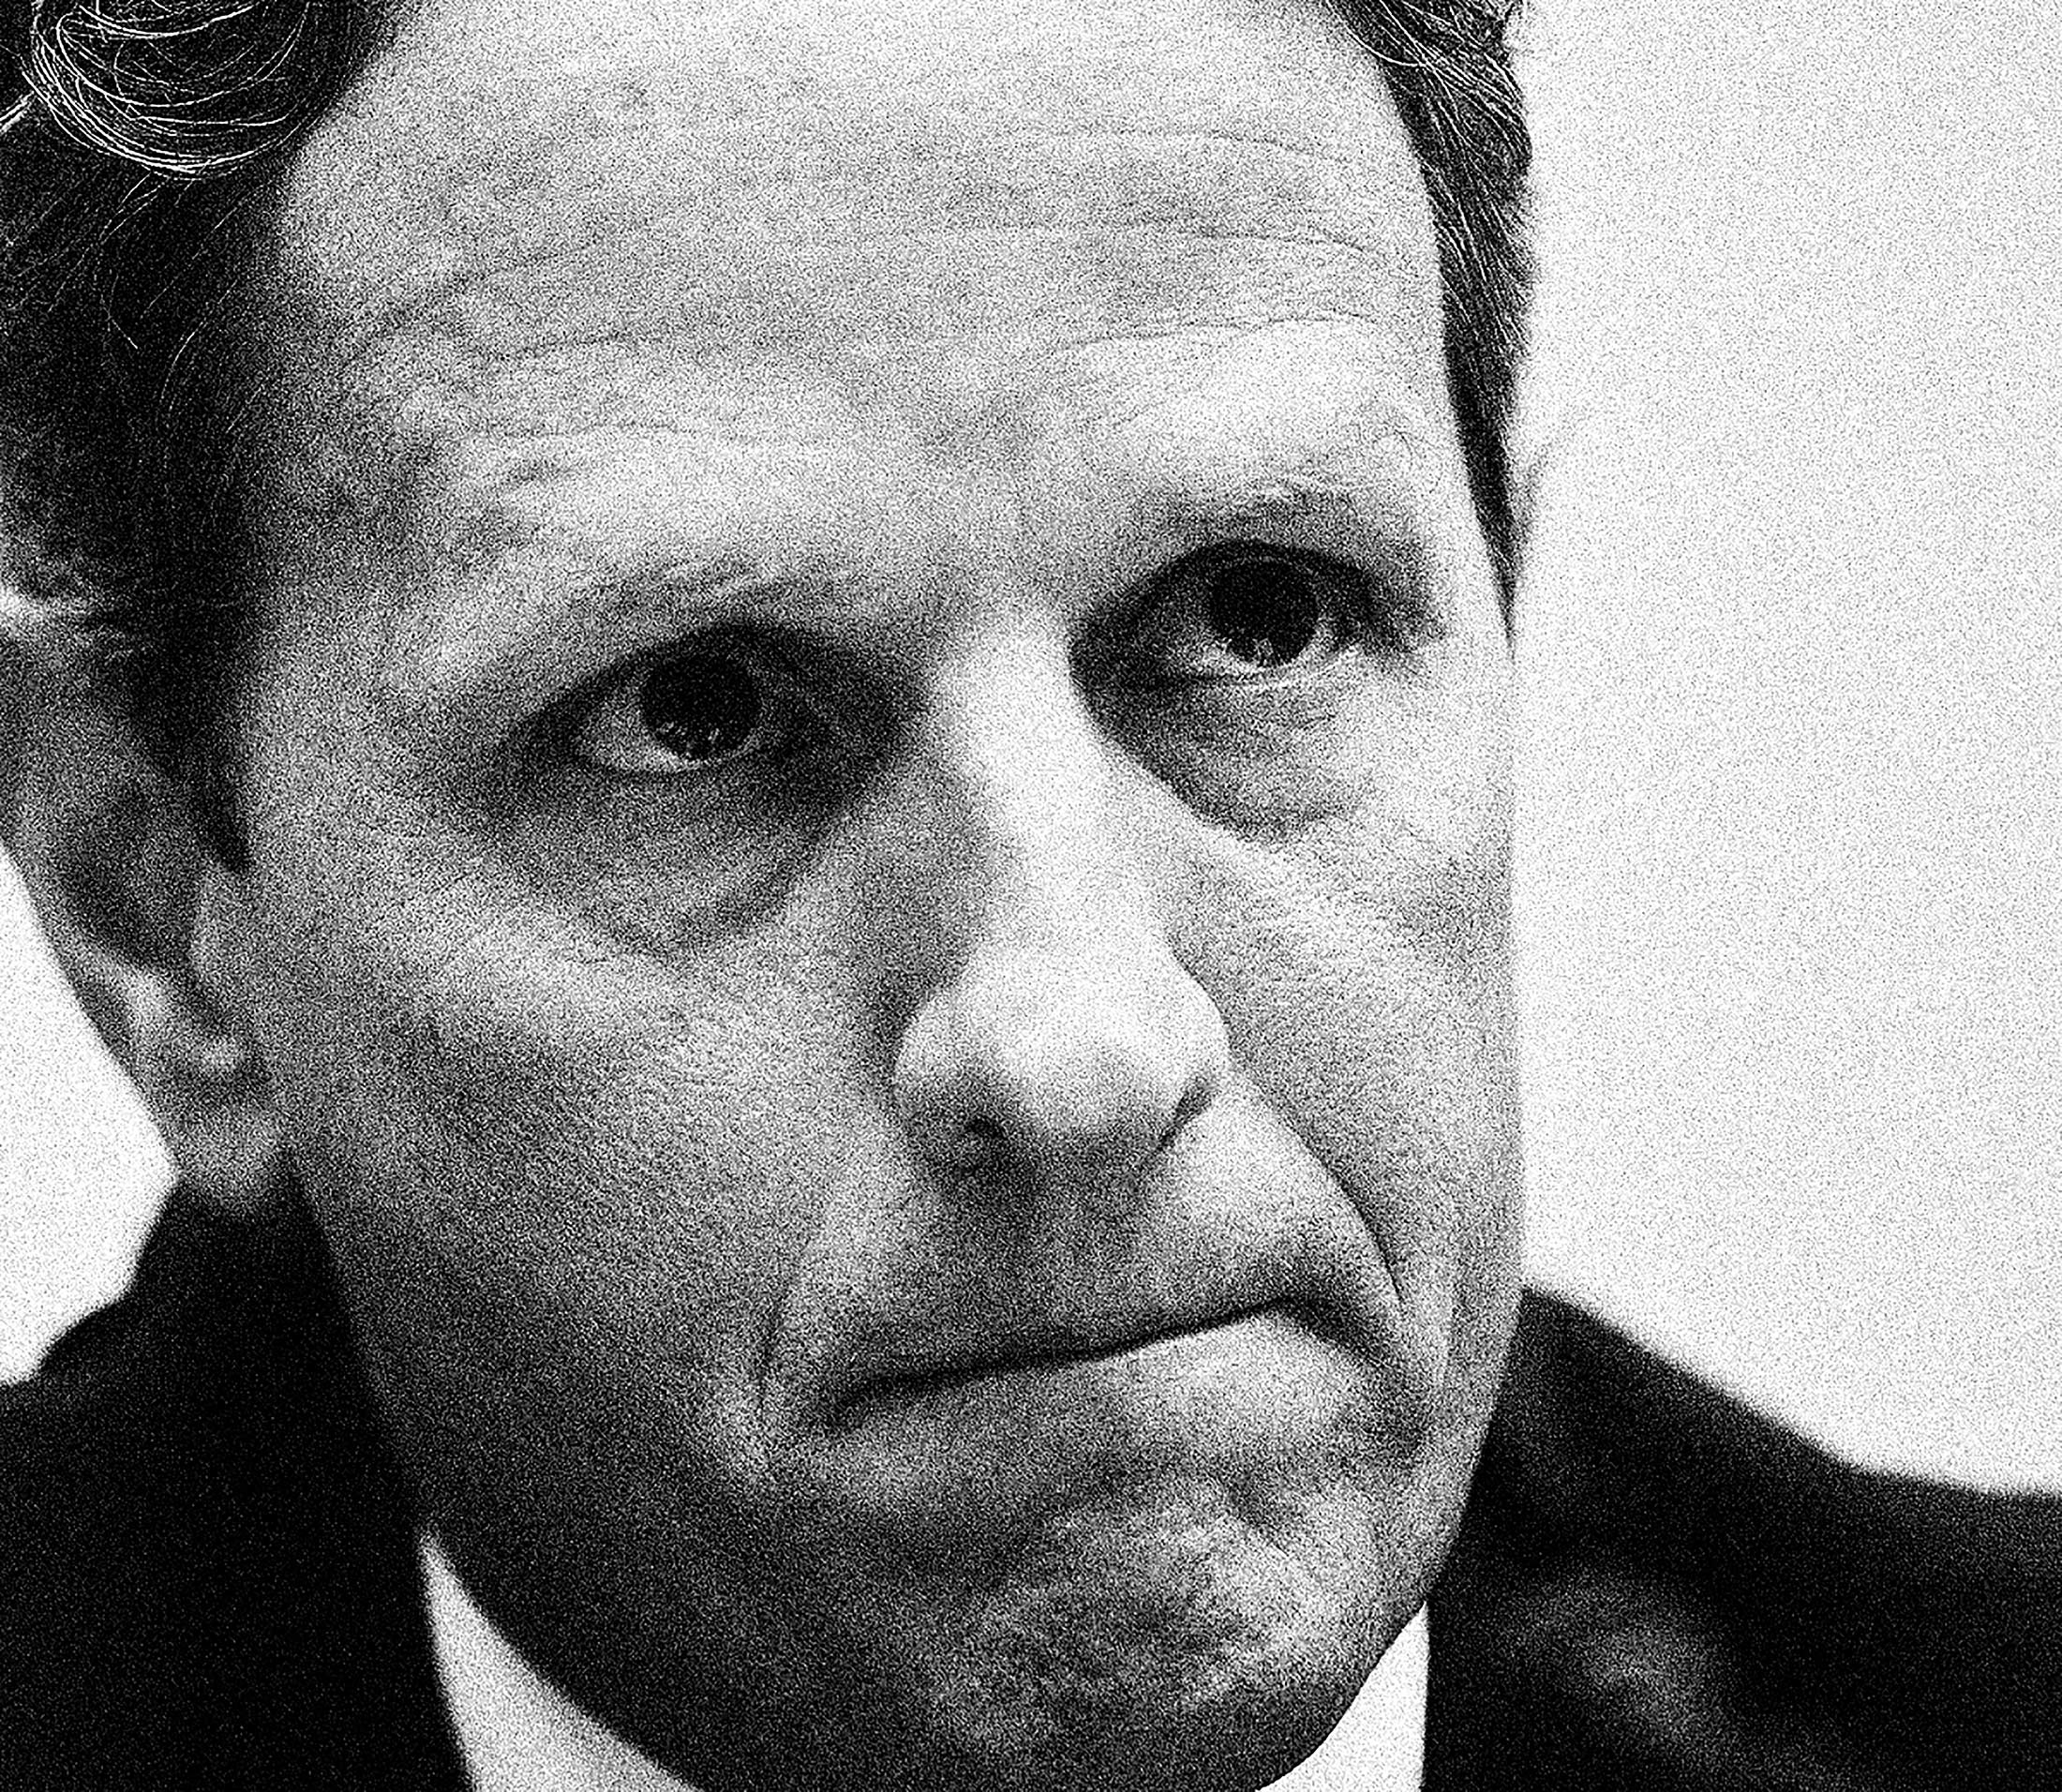 Tim Geithner
